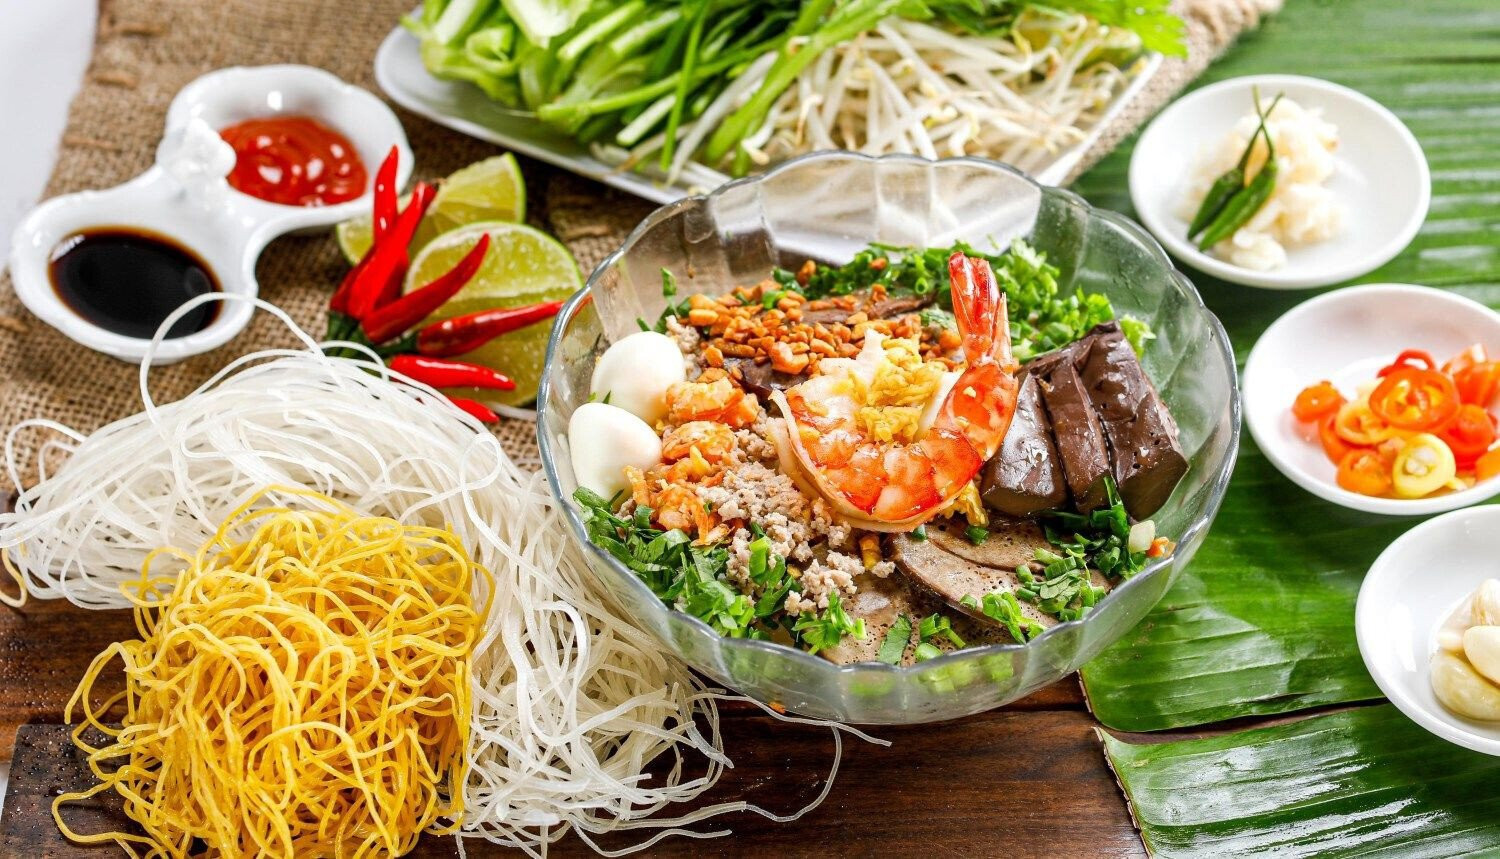 Hủ tiếu Hồng Phát là địa chỉ ẩm thực yêu thích của thực khách Sài Gòn bất chấp giá nhỉnh hơn nhiều quán hủ tiếu cùng phân khúc. (Ảnh: Hồng Phát)